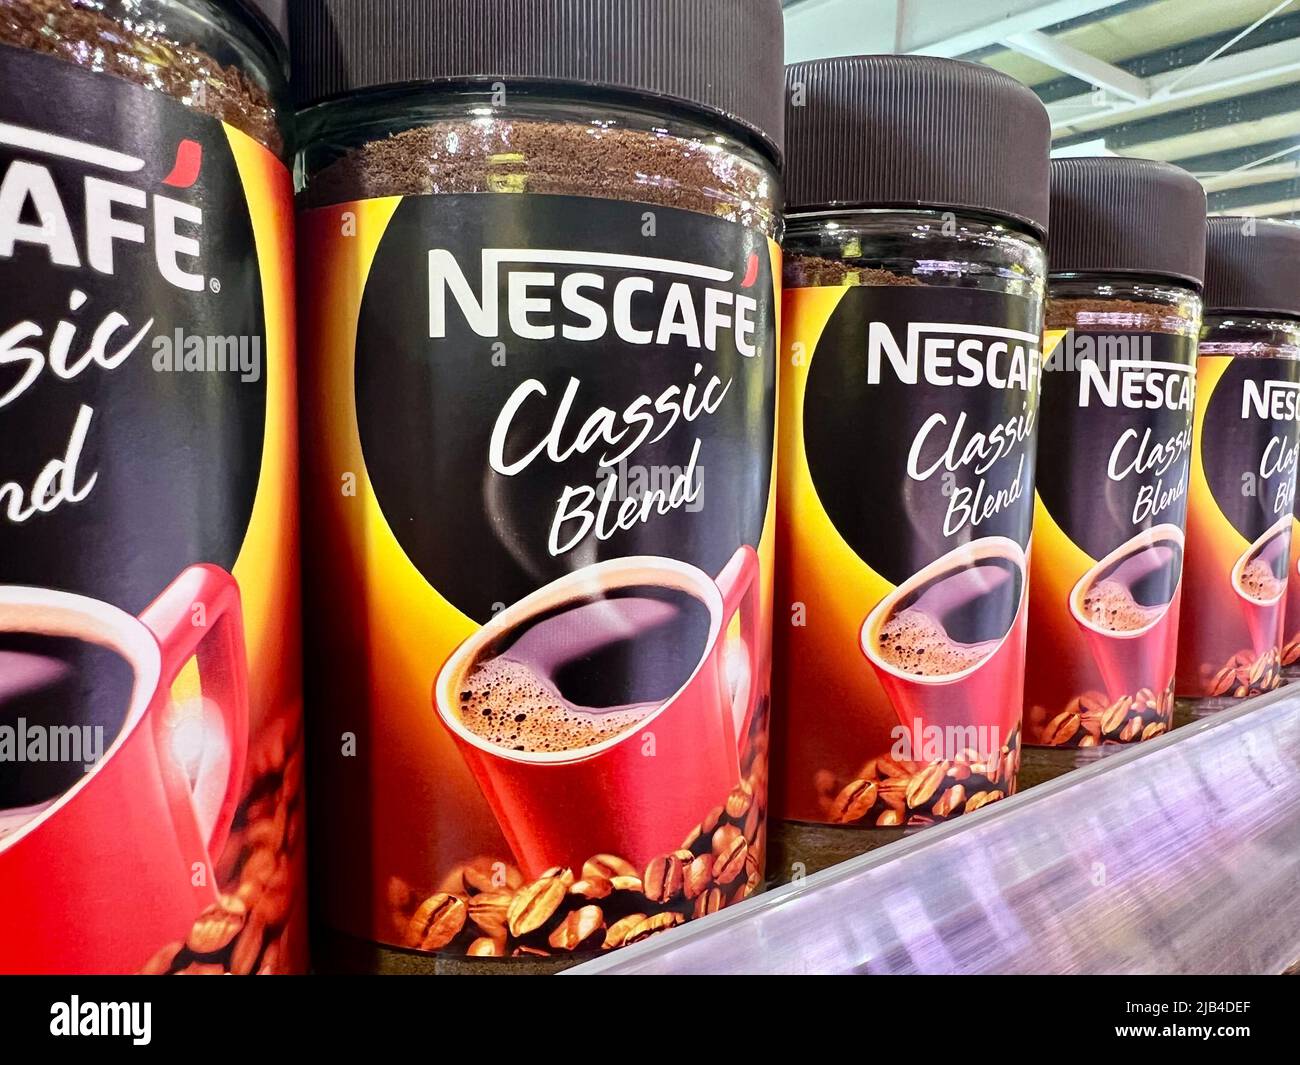 Nescafe Classic Blend Kaffee auf einem Regal in einem Supermarkt Stockfoto